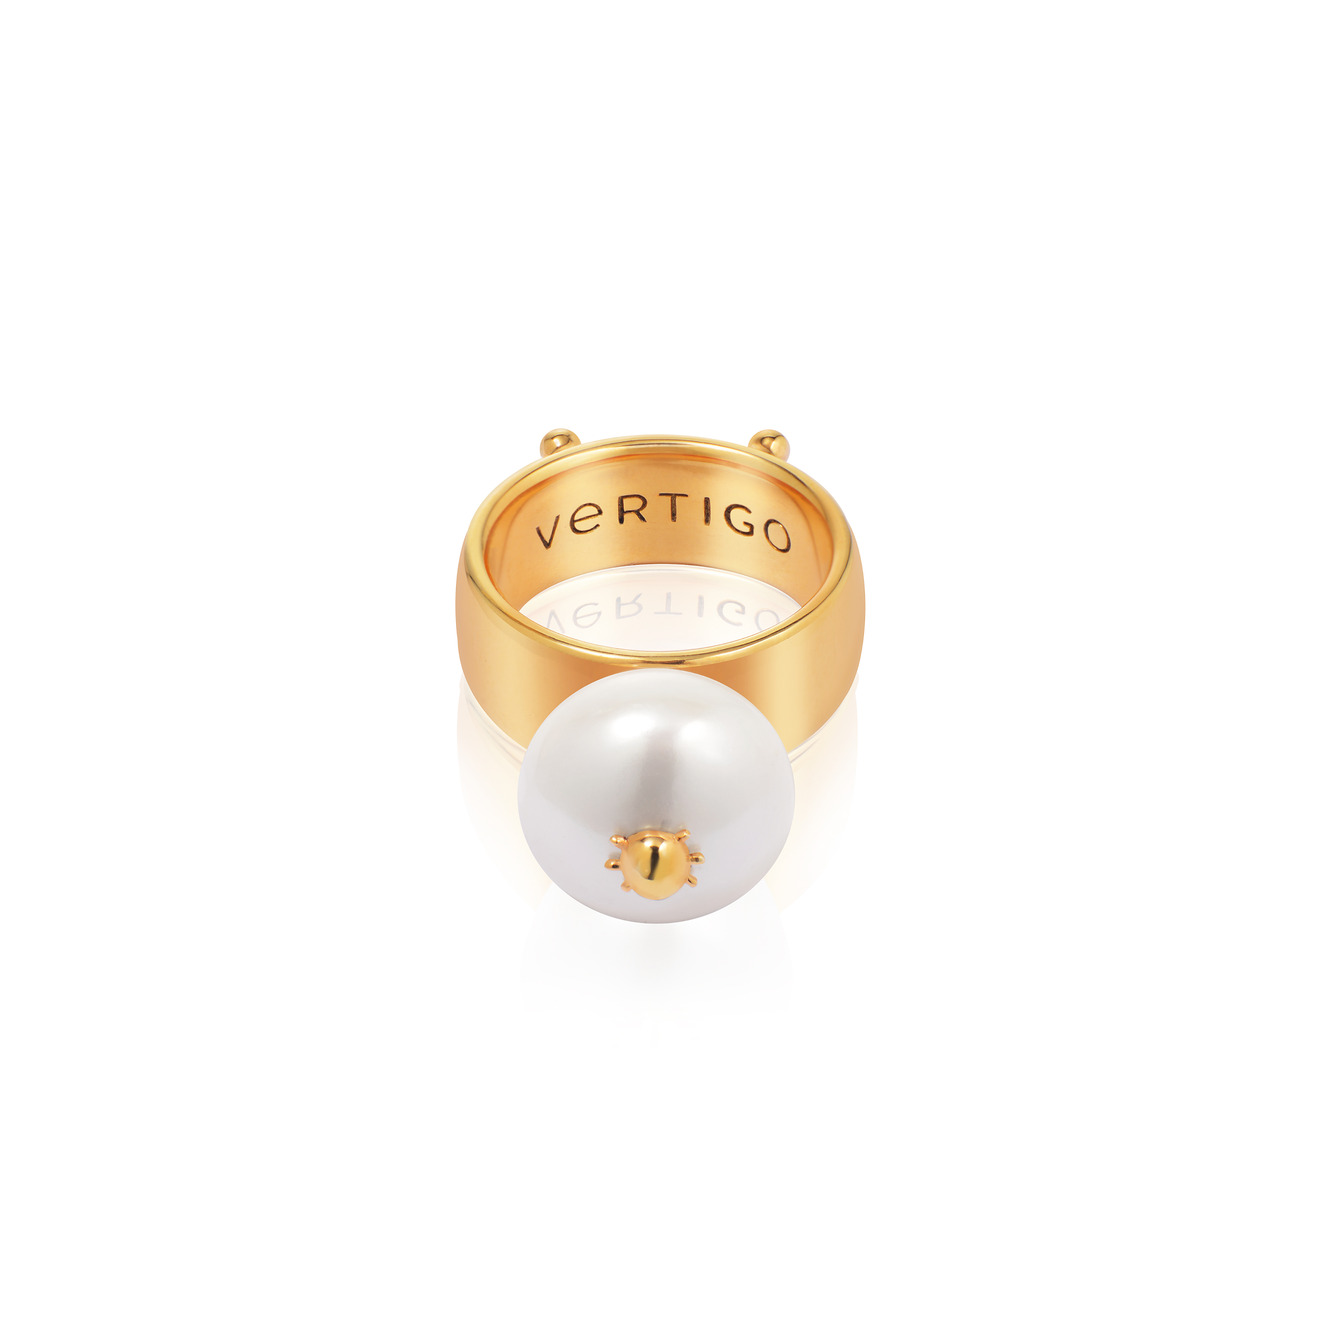 Vertigo Jewellery Lab Позолоченное кольцо СLEOPTR LADYBUG RING из серебра с речным жемчугом vertigo jewellery lab позолоченный браслет bug pearl из серебра с жемчугом